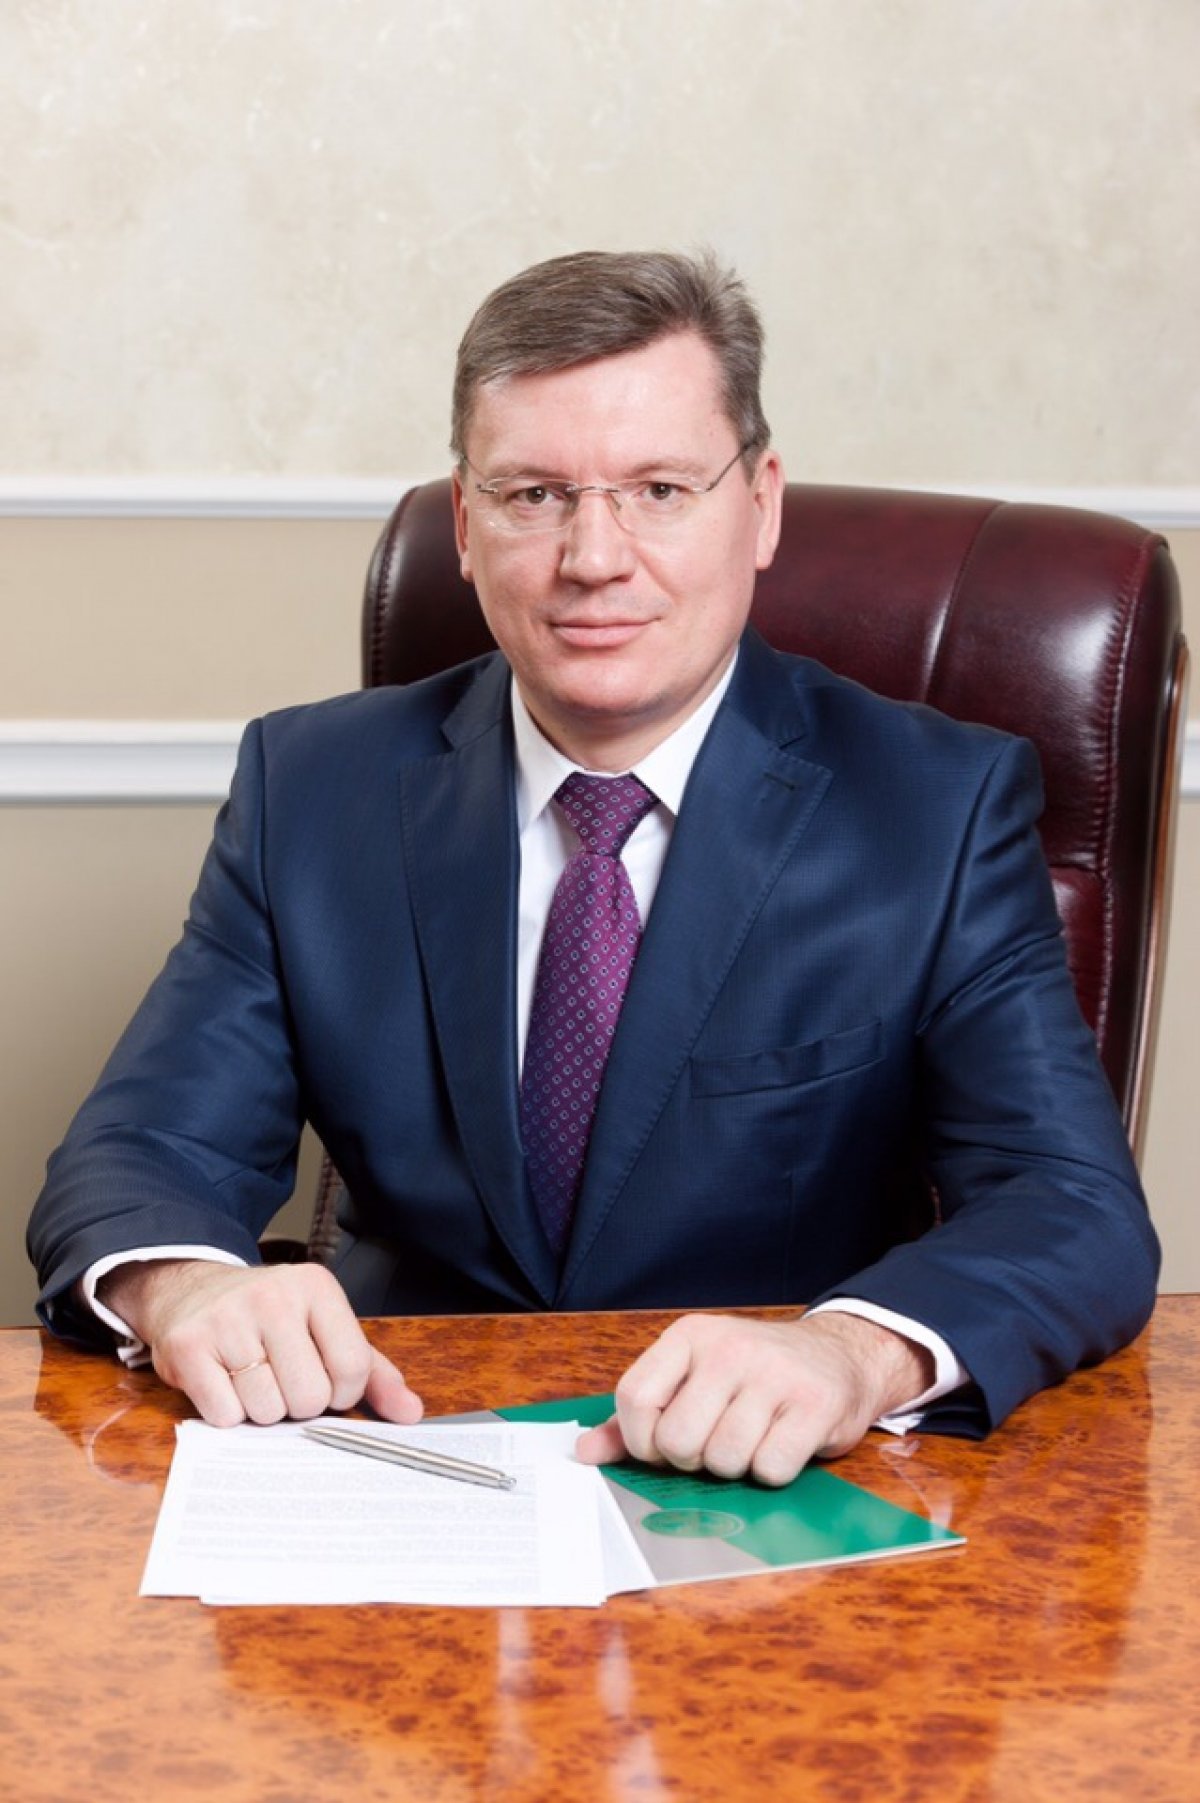 Сегодня день рождения ректора нашего Университета Александра Юрьевича Панычева! 🎉